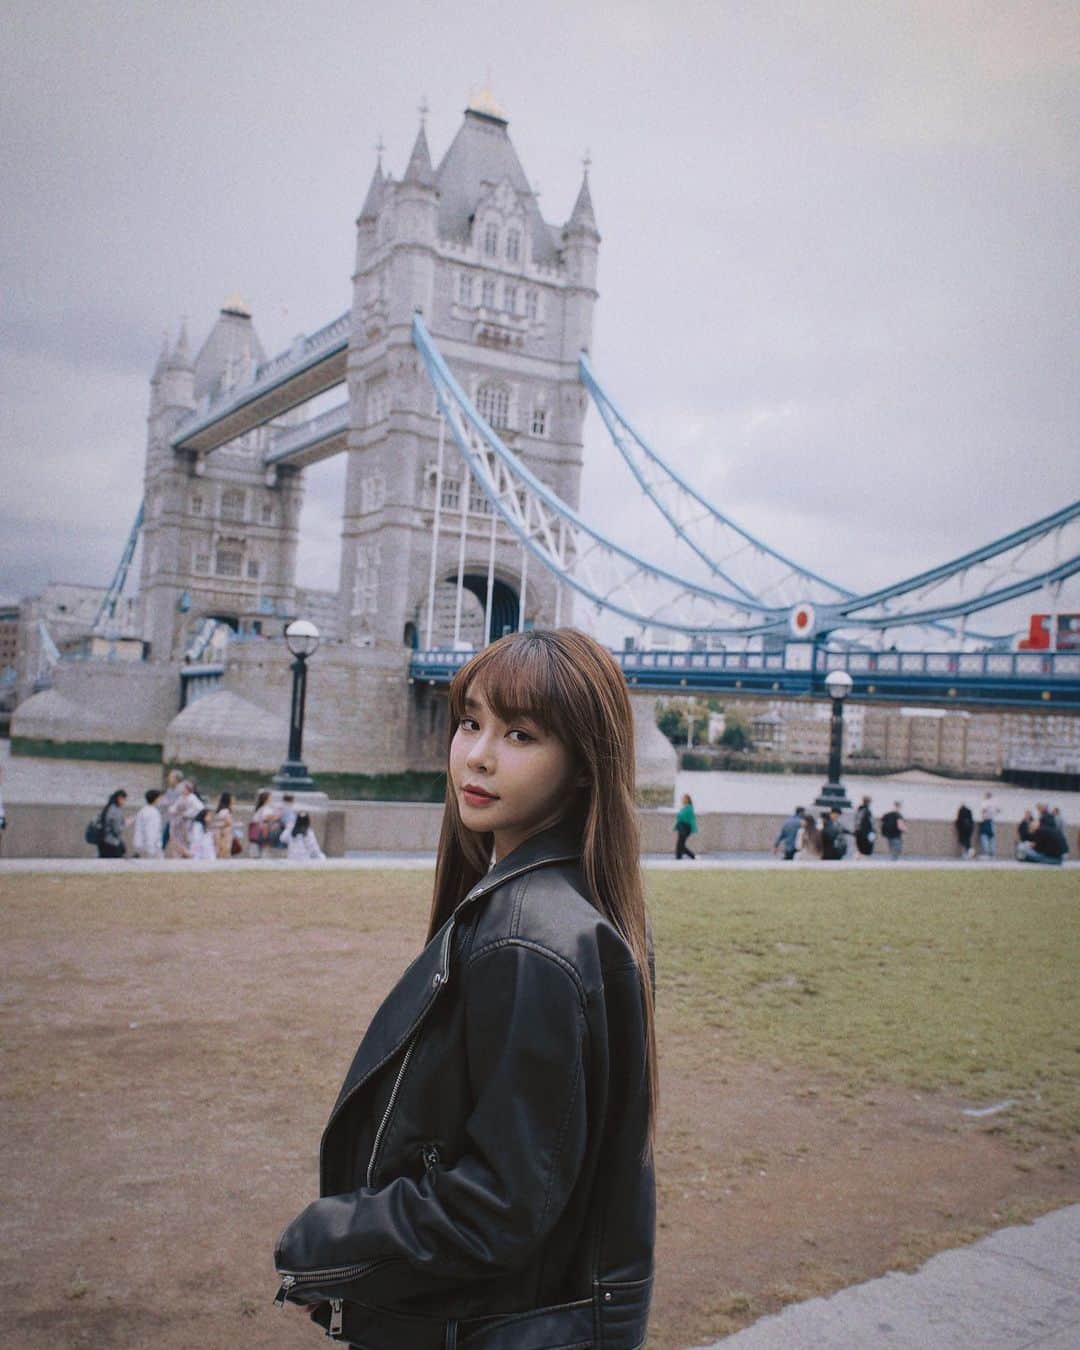 Yuriのインスタグラム：「有好多倫敦碎片可以發🧩  去傳說中的倫敦大橋還有Tower bridge散步了一圈， 我覺得我可以在這坐一個下午（如果不下雨的話😂） 以前出去玩很懶得拍照，覺得拍照了就像在工作， 但是沒有幾張美照的話，我怎麼能半夜睡不著覺的時候 還能津津有味的回顧啊～  看著照片完全能回想起當天涼涼的風，走路很慢的人們，還有中午大橋落地窗餐廳裡面喝著酒的上班族。 很放鬆的感受倫敦的陰天， 陽光穿過雲層投射到百年歷史建築的片刻， 不知道為什麼這種小確幸能美到有點感動， 縱使離開的時候下了場大雨， 也難以忘懷這麼有魅力的街景  🎵🎵  London bridge is falling down falling down falling down London bridge is falling down falling down falling down London bridge is falling down falling down falling down Yeah Yeah Falling down 倫敦大橋垮下來我也不離開 你的誓言說的太快 像個旅客不斷找路牌 倫敦大橋早看開 陪我在等待 愛情中最大的障礙 不是語言而是愛  🎵🎵  想搭配S.H.E的倫敦大橋垮下來 但是沒得選  凌晨發文總是流水帳  這是某一天的倫敦一日遊， 感謝萬能經紀人凱翔陪遊&賜照～ 拍照技術好像又更進步了喔 @alexhkstw」